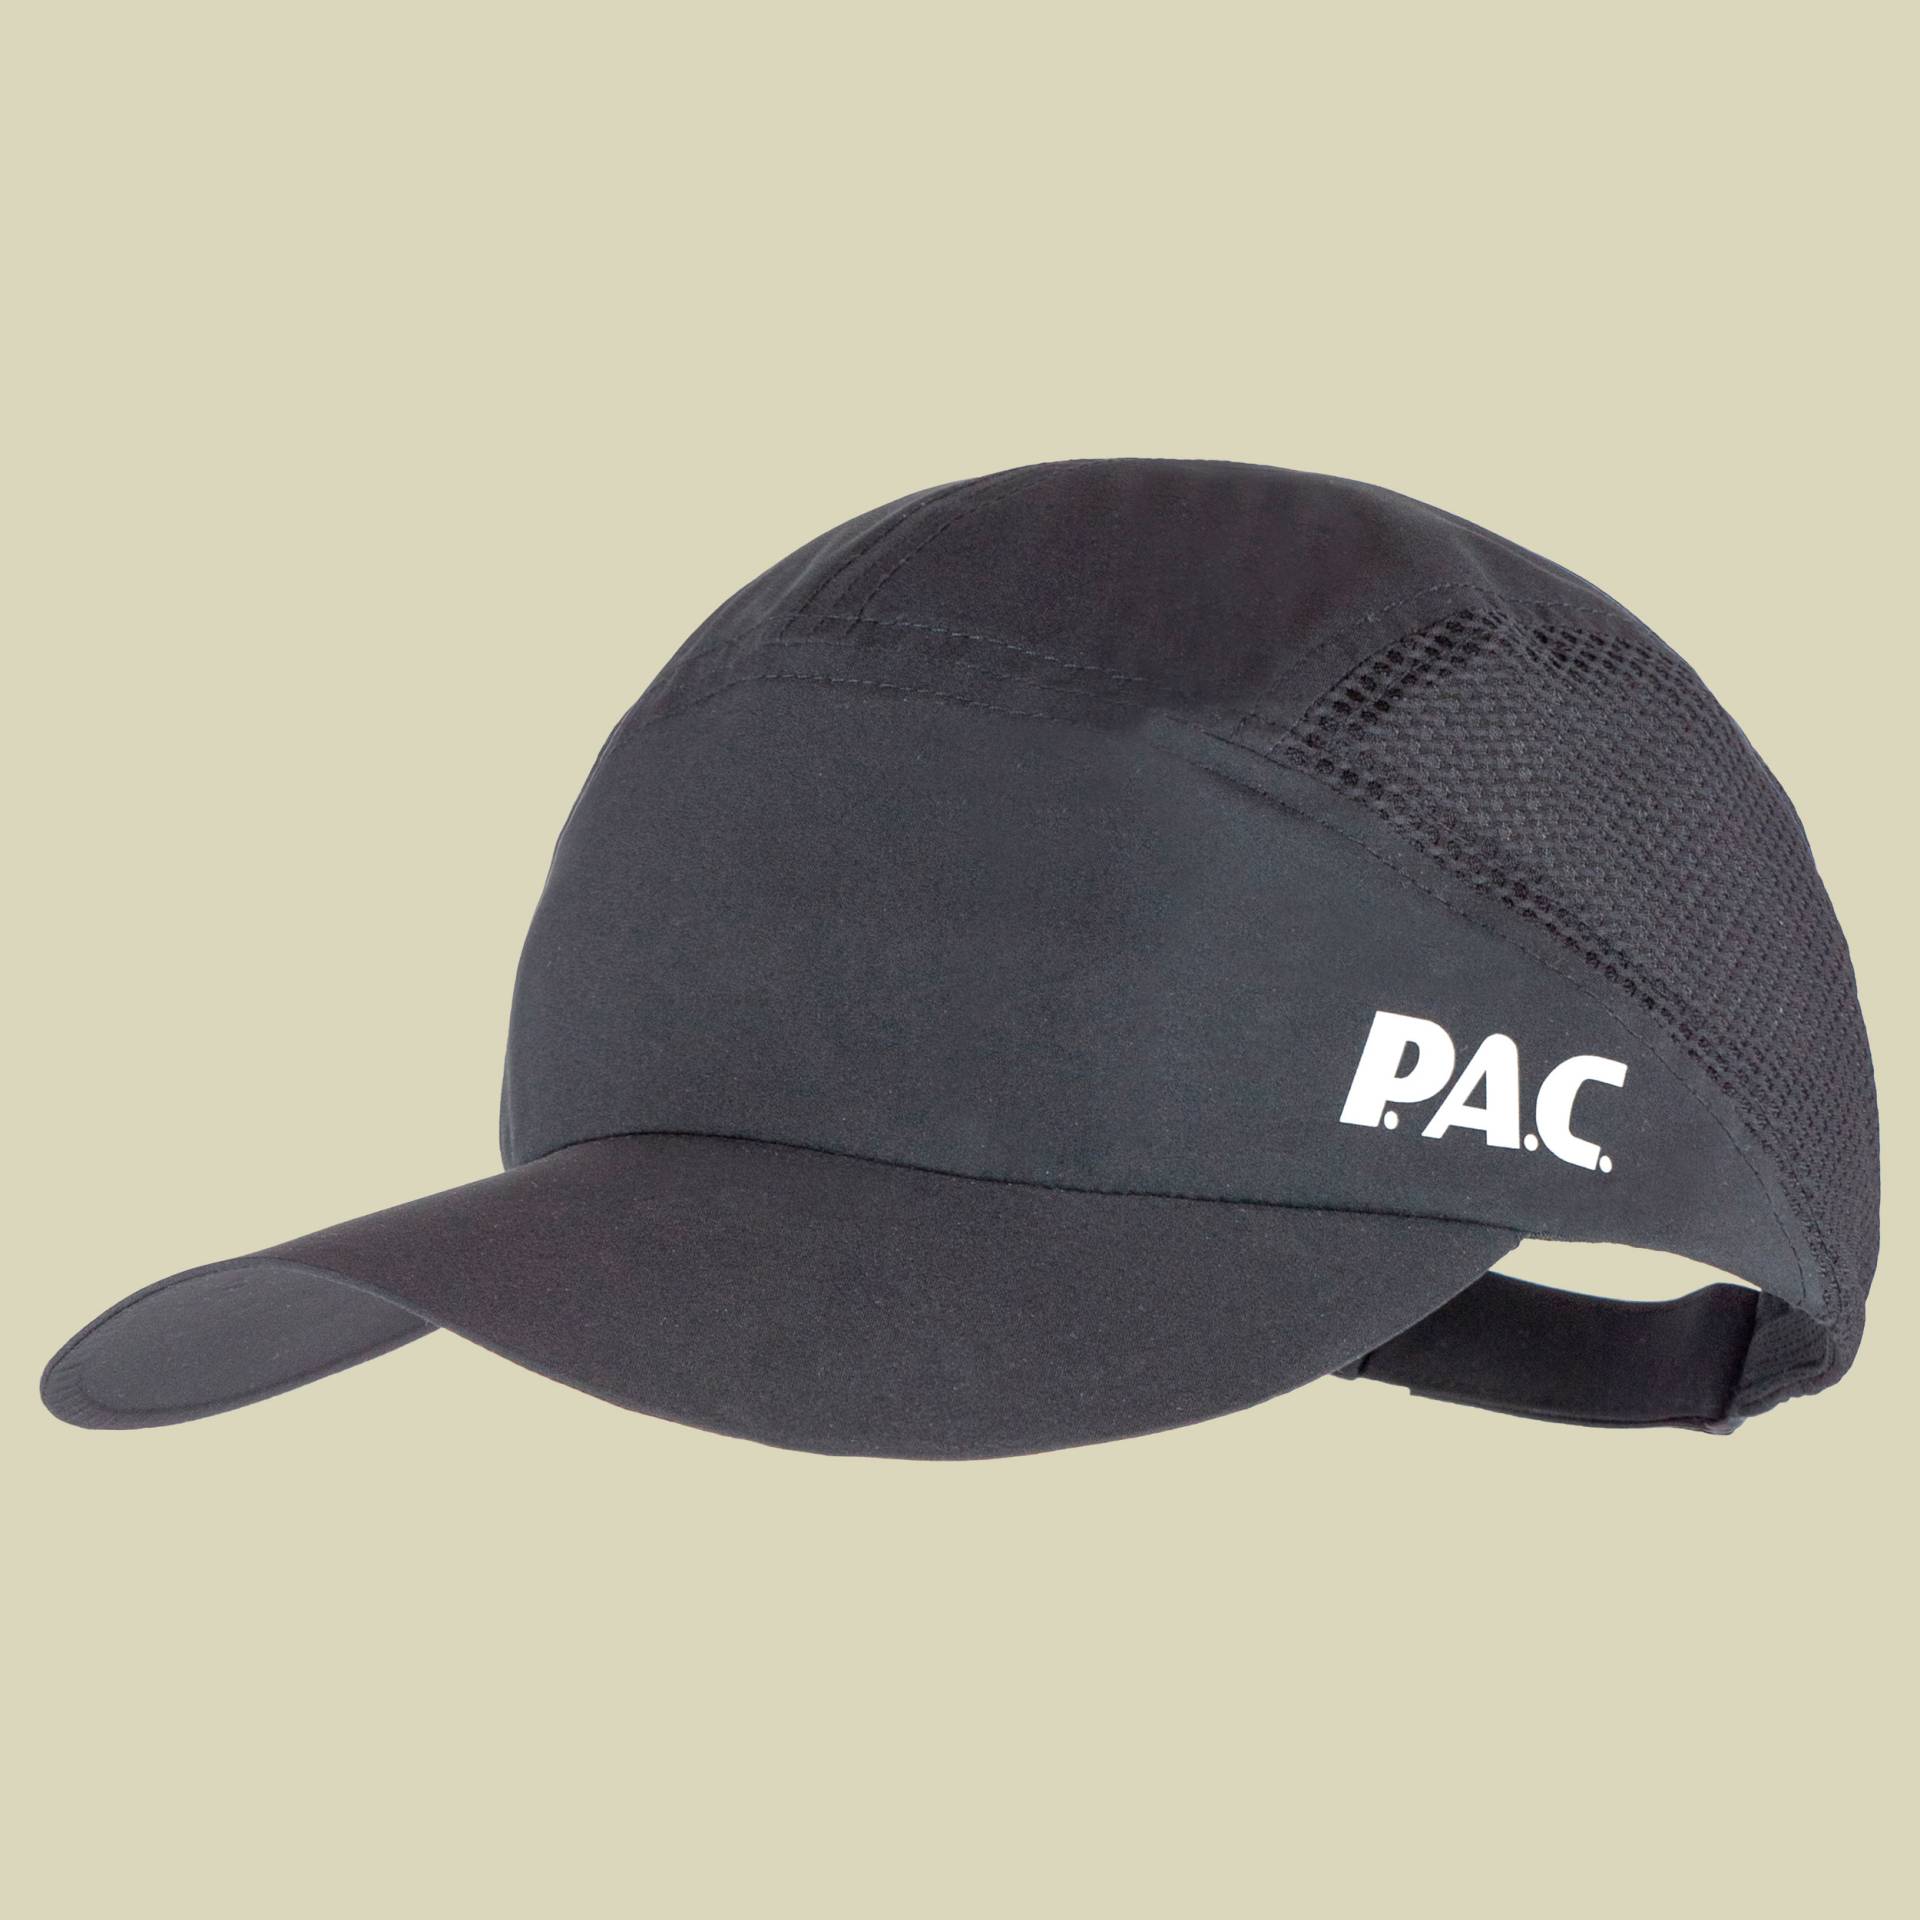 P.A.C. Gilan Soft Outdoor Cap one size schwarz - black von PAC